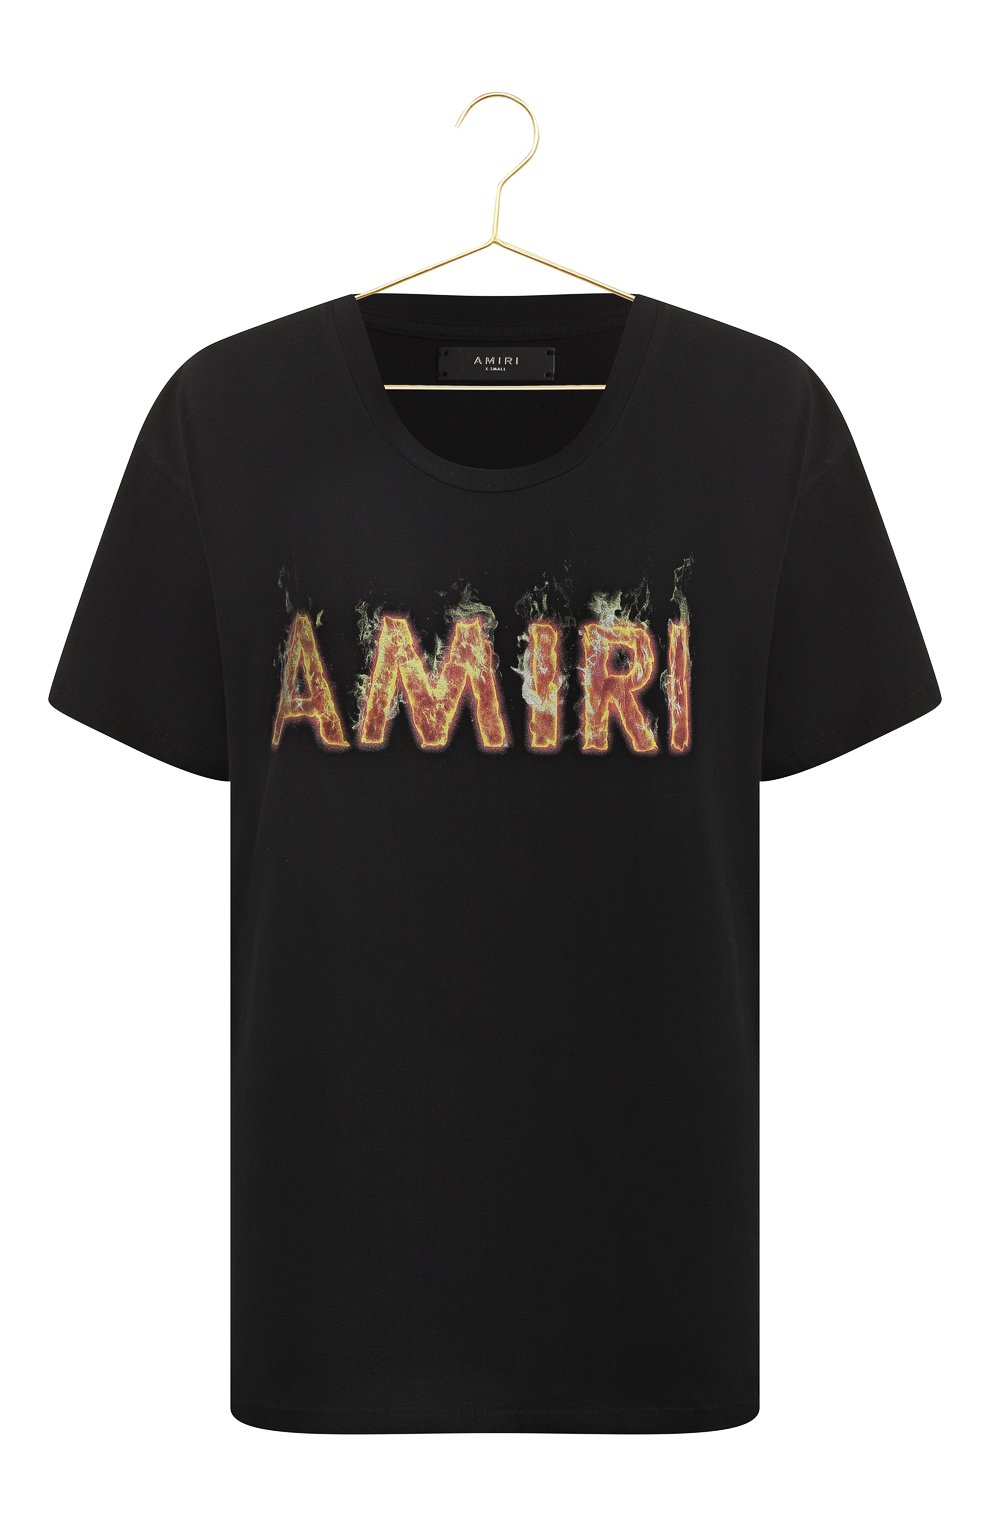 Хлопковая футболка | Amiri | Чёрный - 1